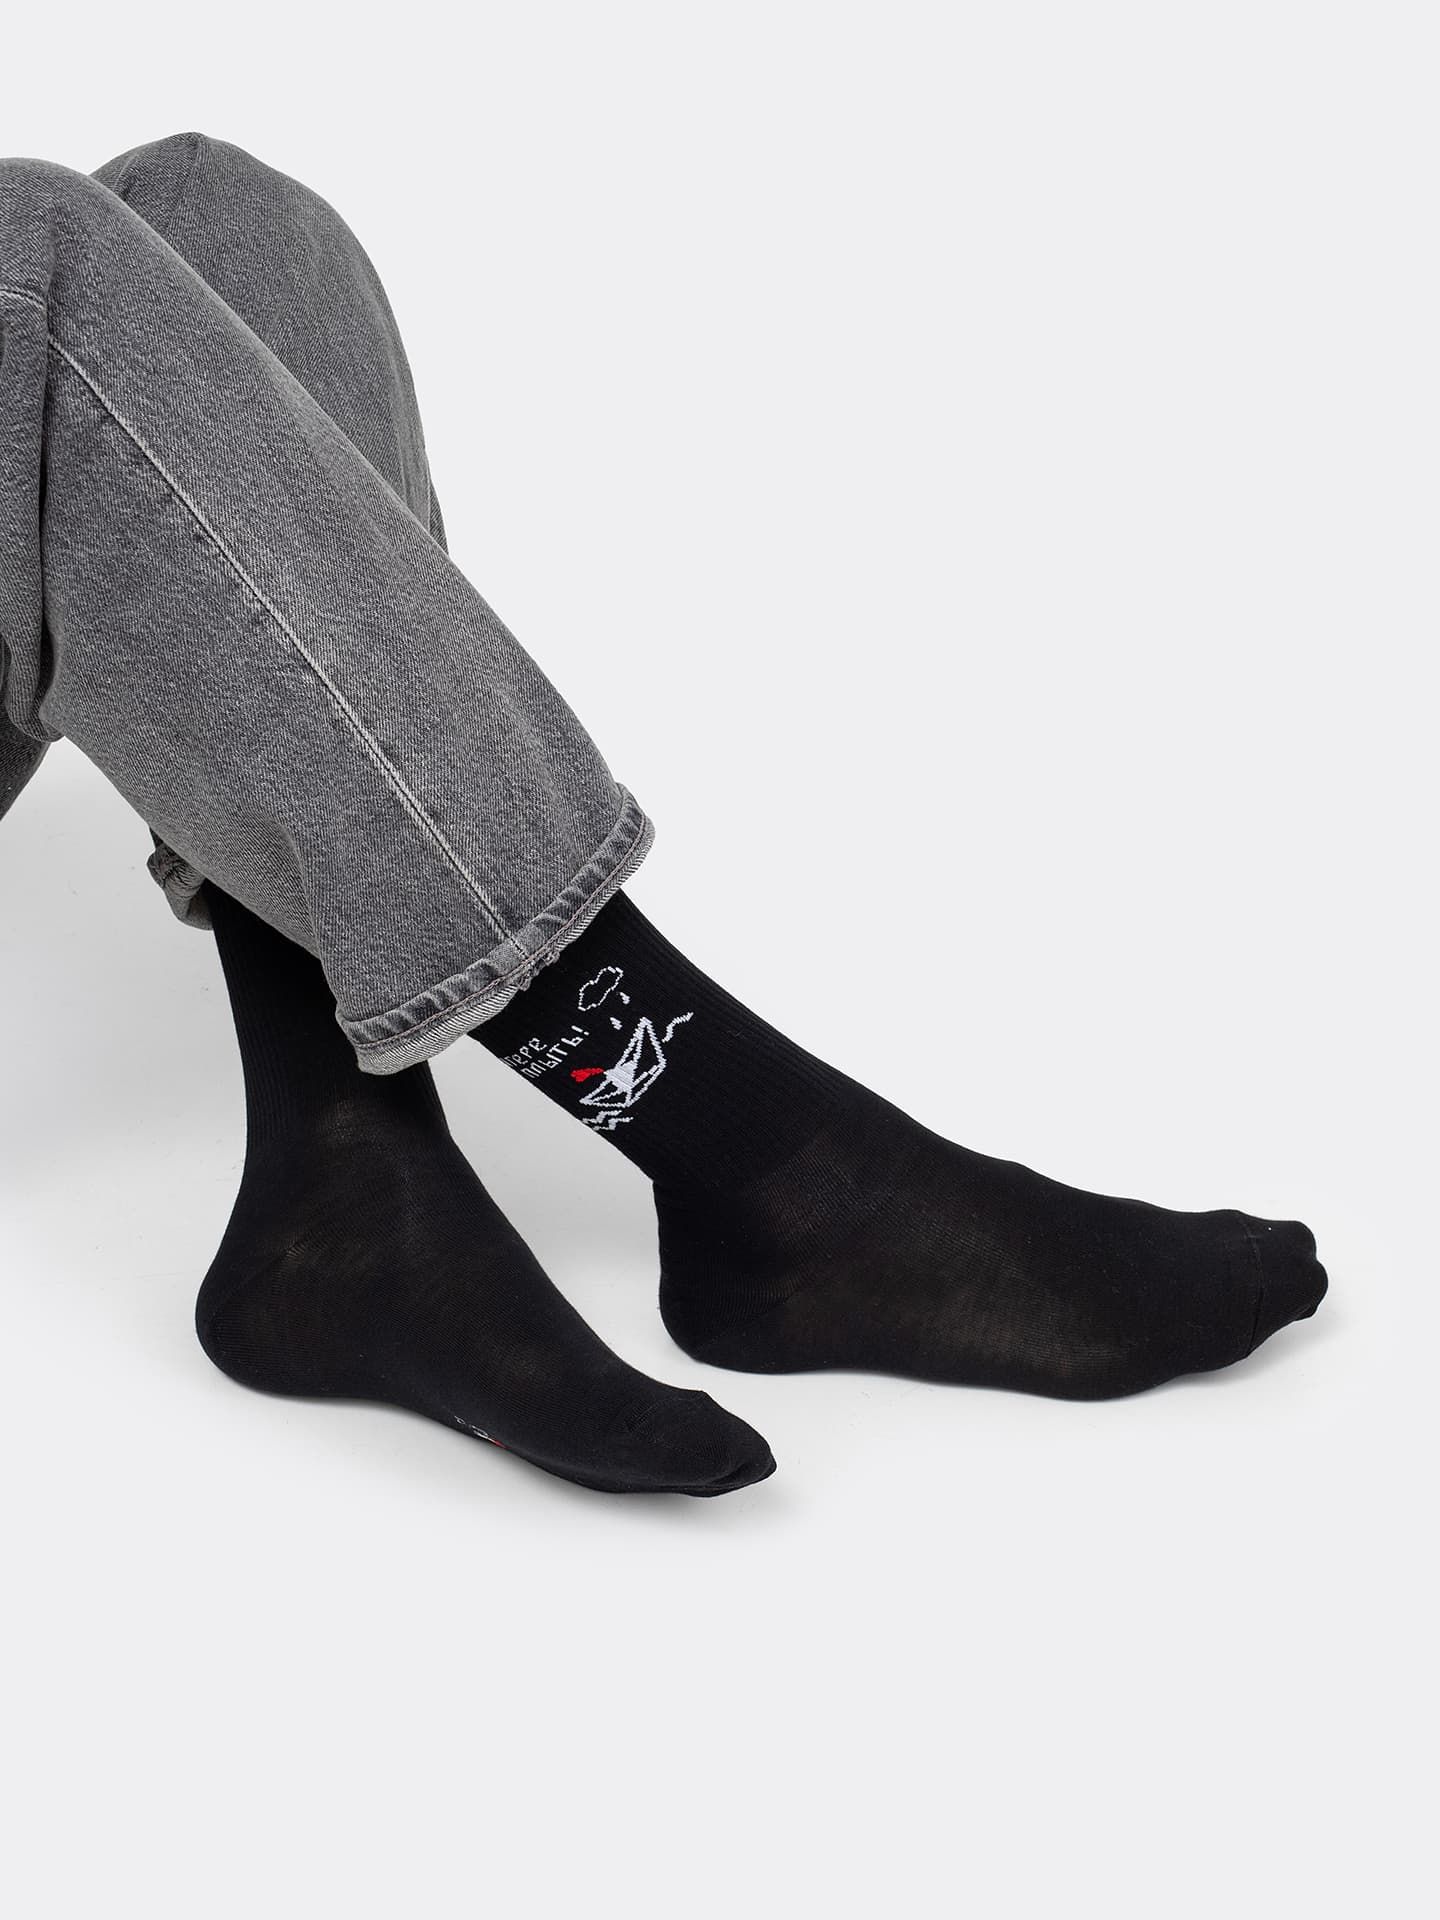 Высокие носки унисекс черного цвета с принтом на петербургскую тематику